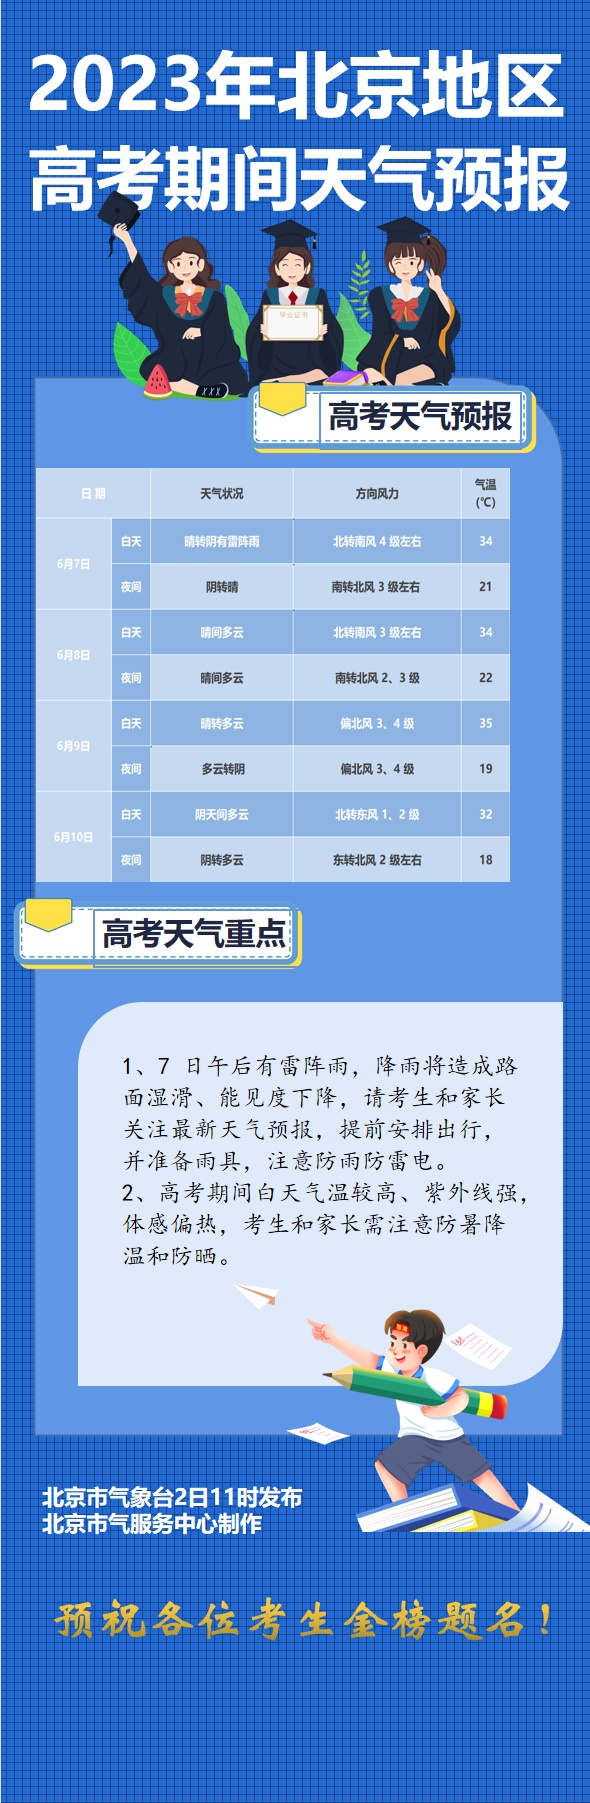 北京地区高考天气预报发布，预计7日午后有雷阵雨